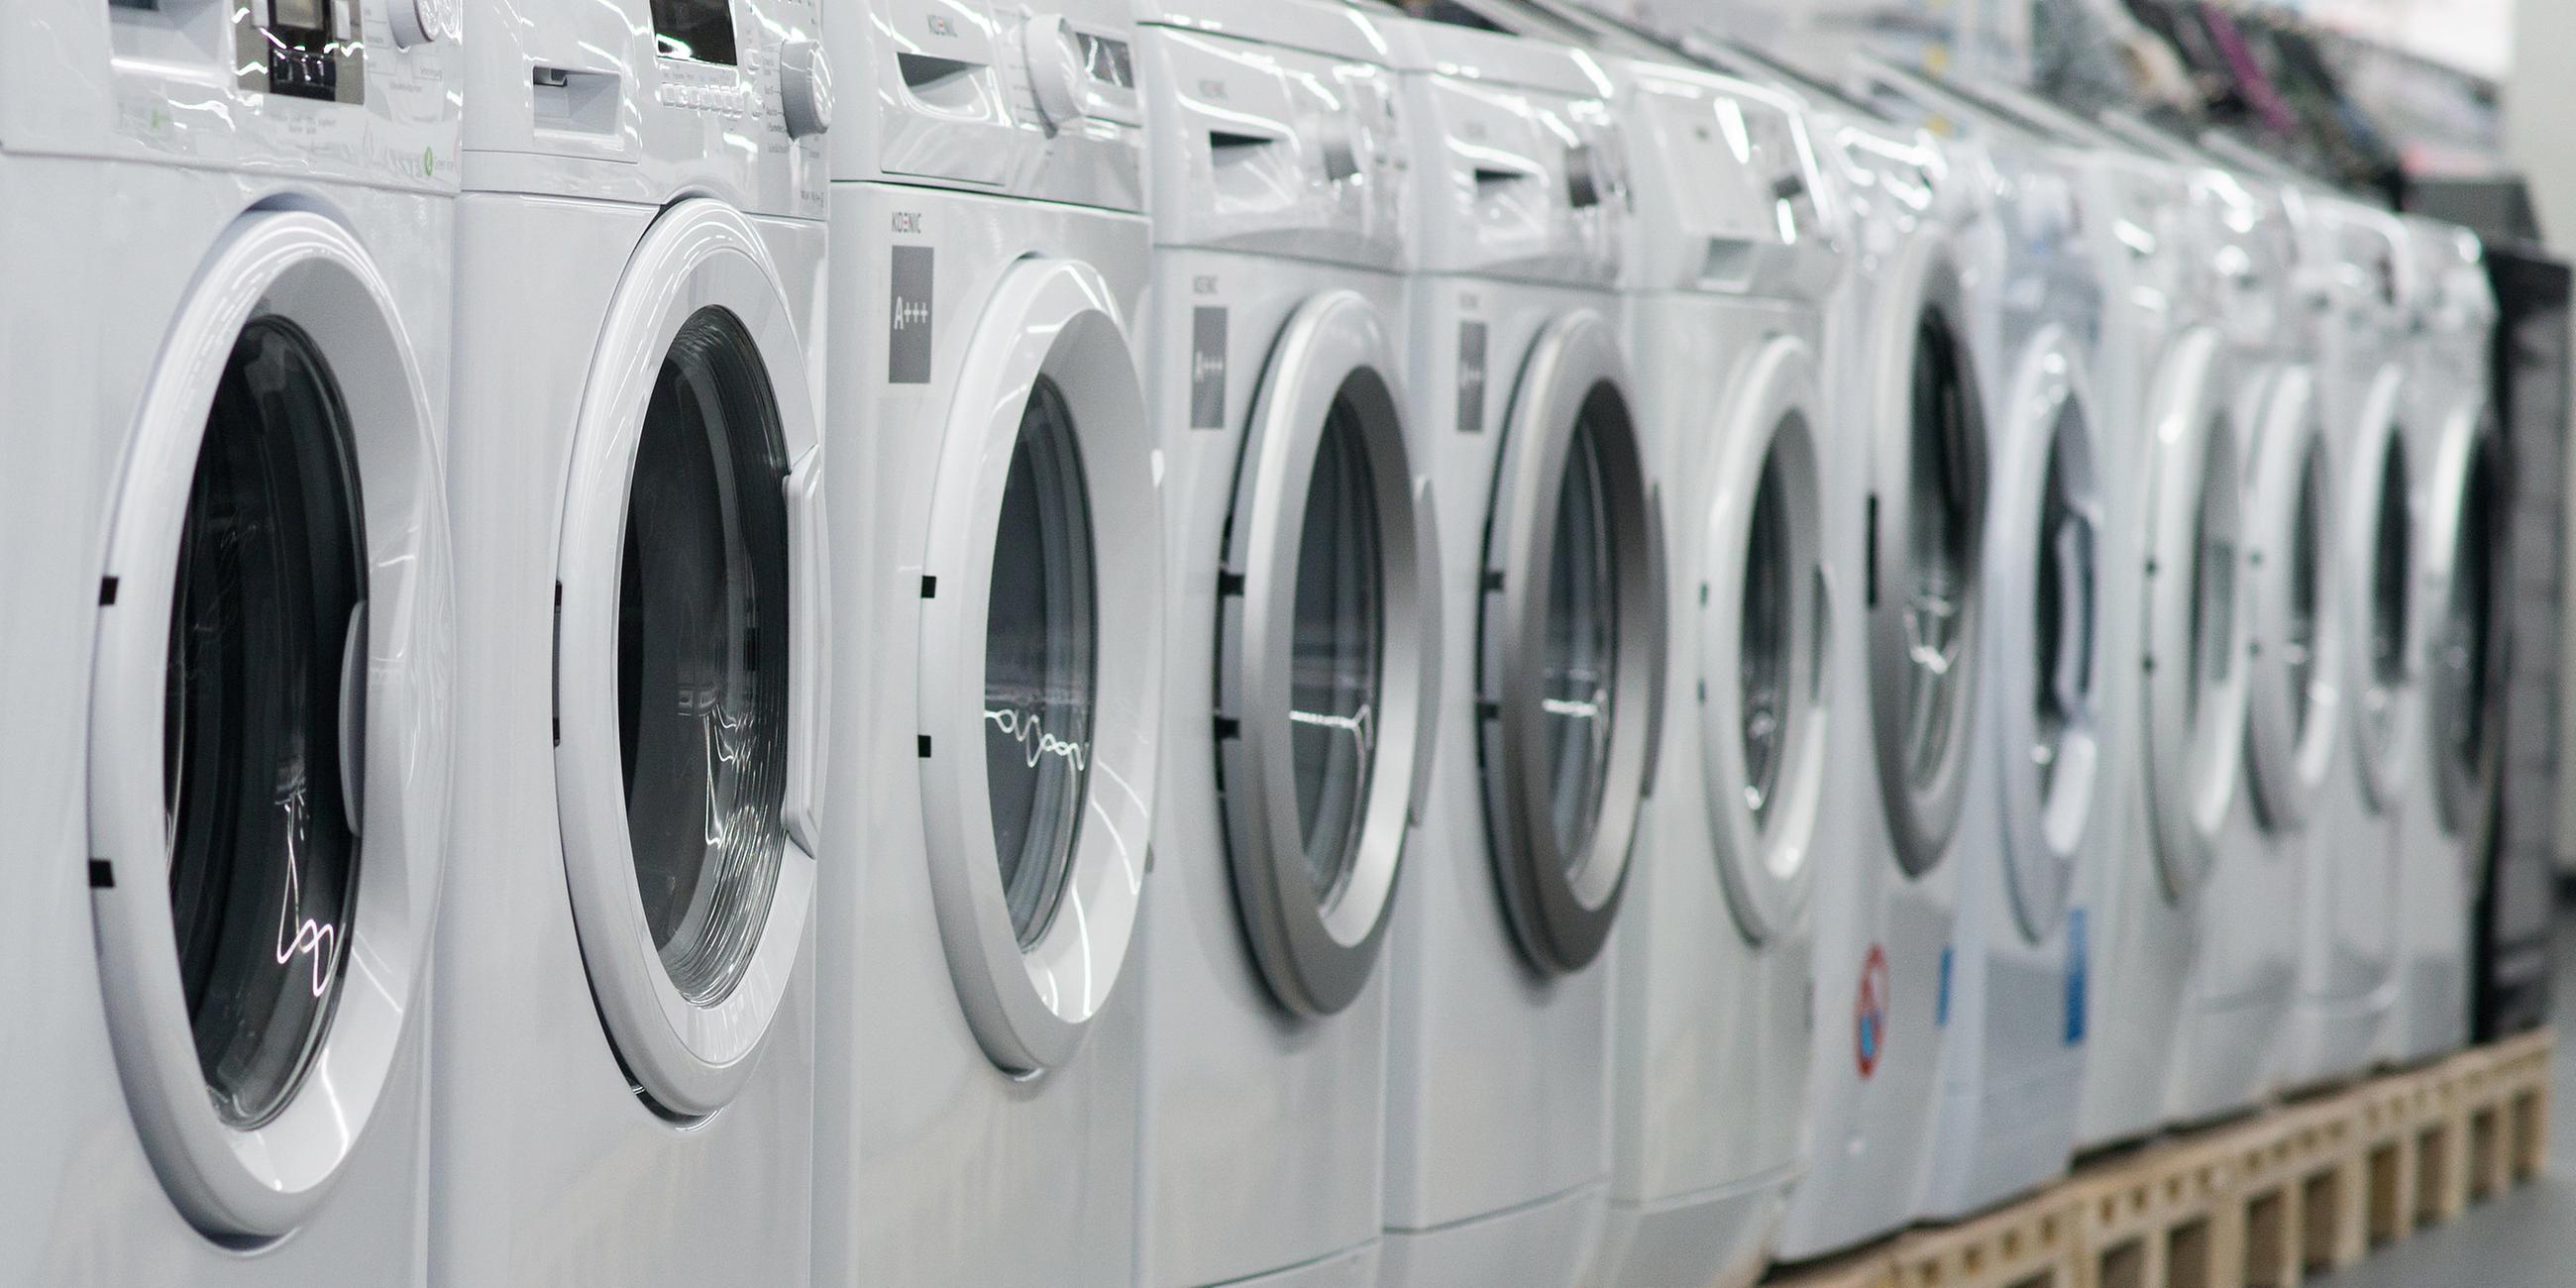 Waschmaschinen stehen am 18.09.2014 in einem Elektromarkt in Ingolstadt (Bayern)